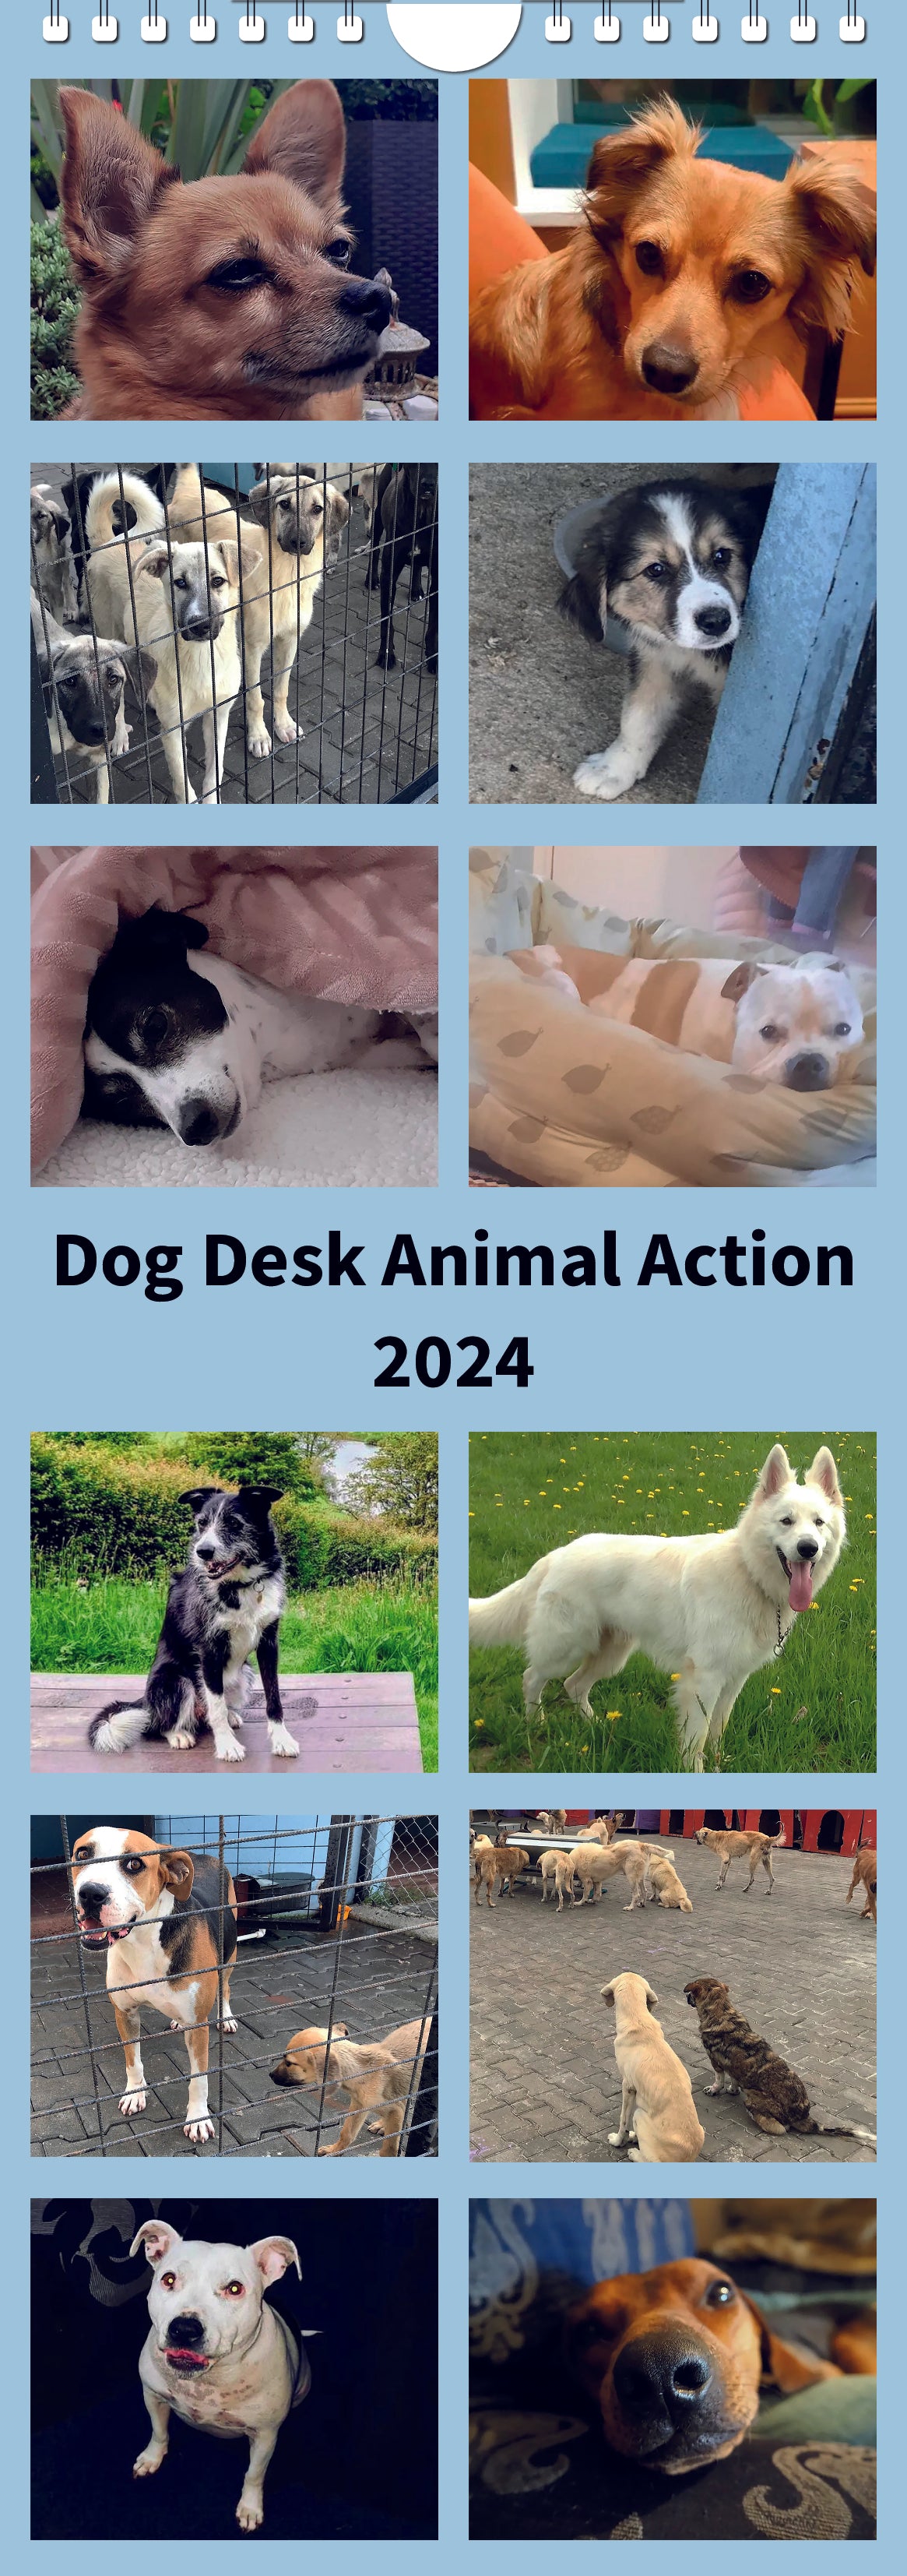 Dog Desk Animal Action Calander 2024